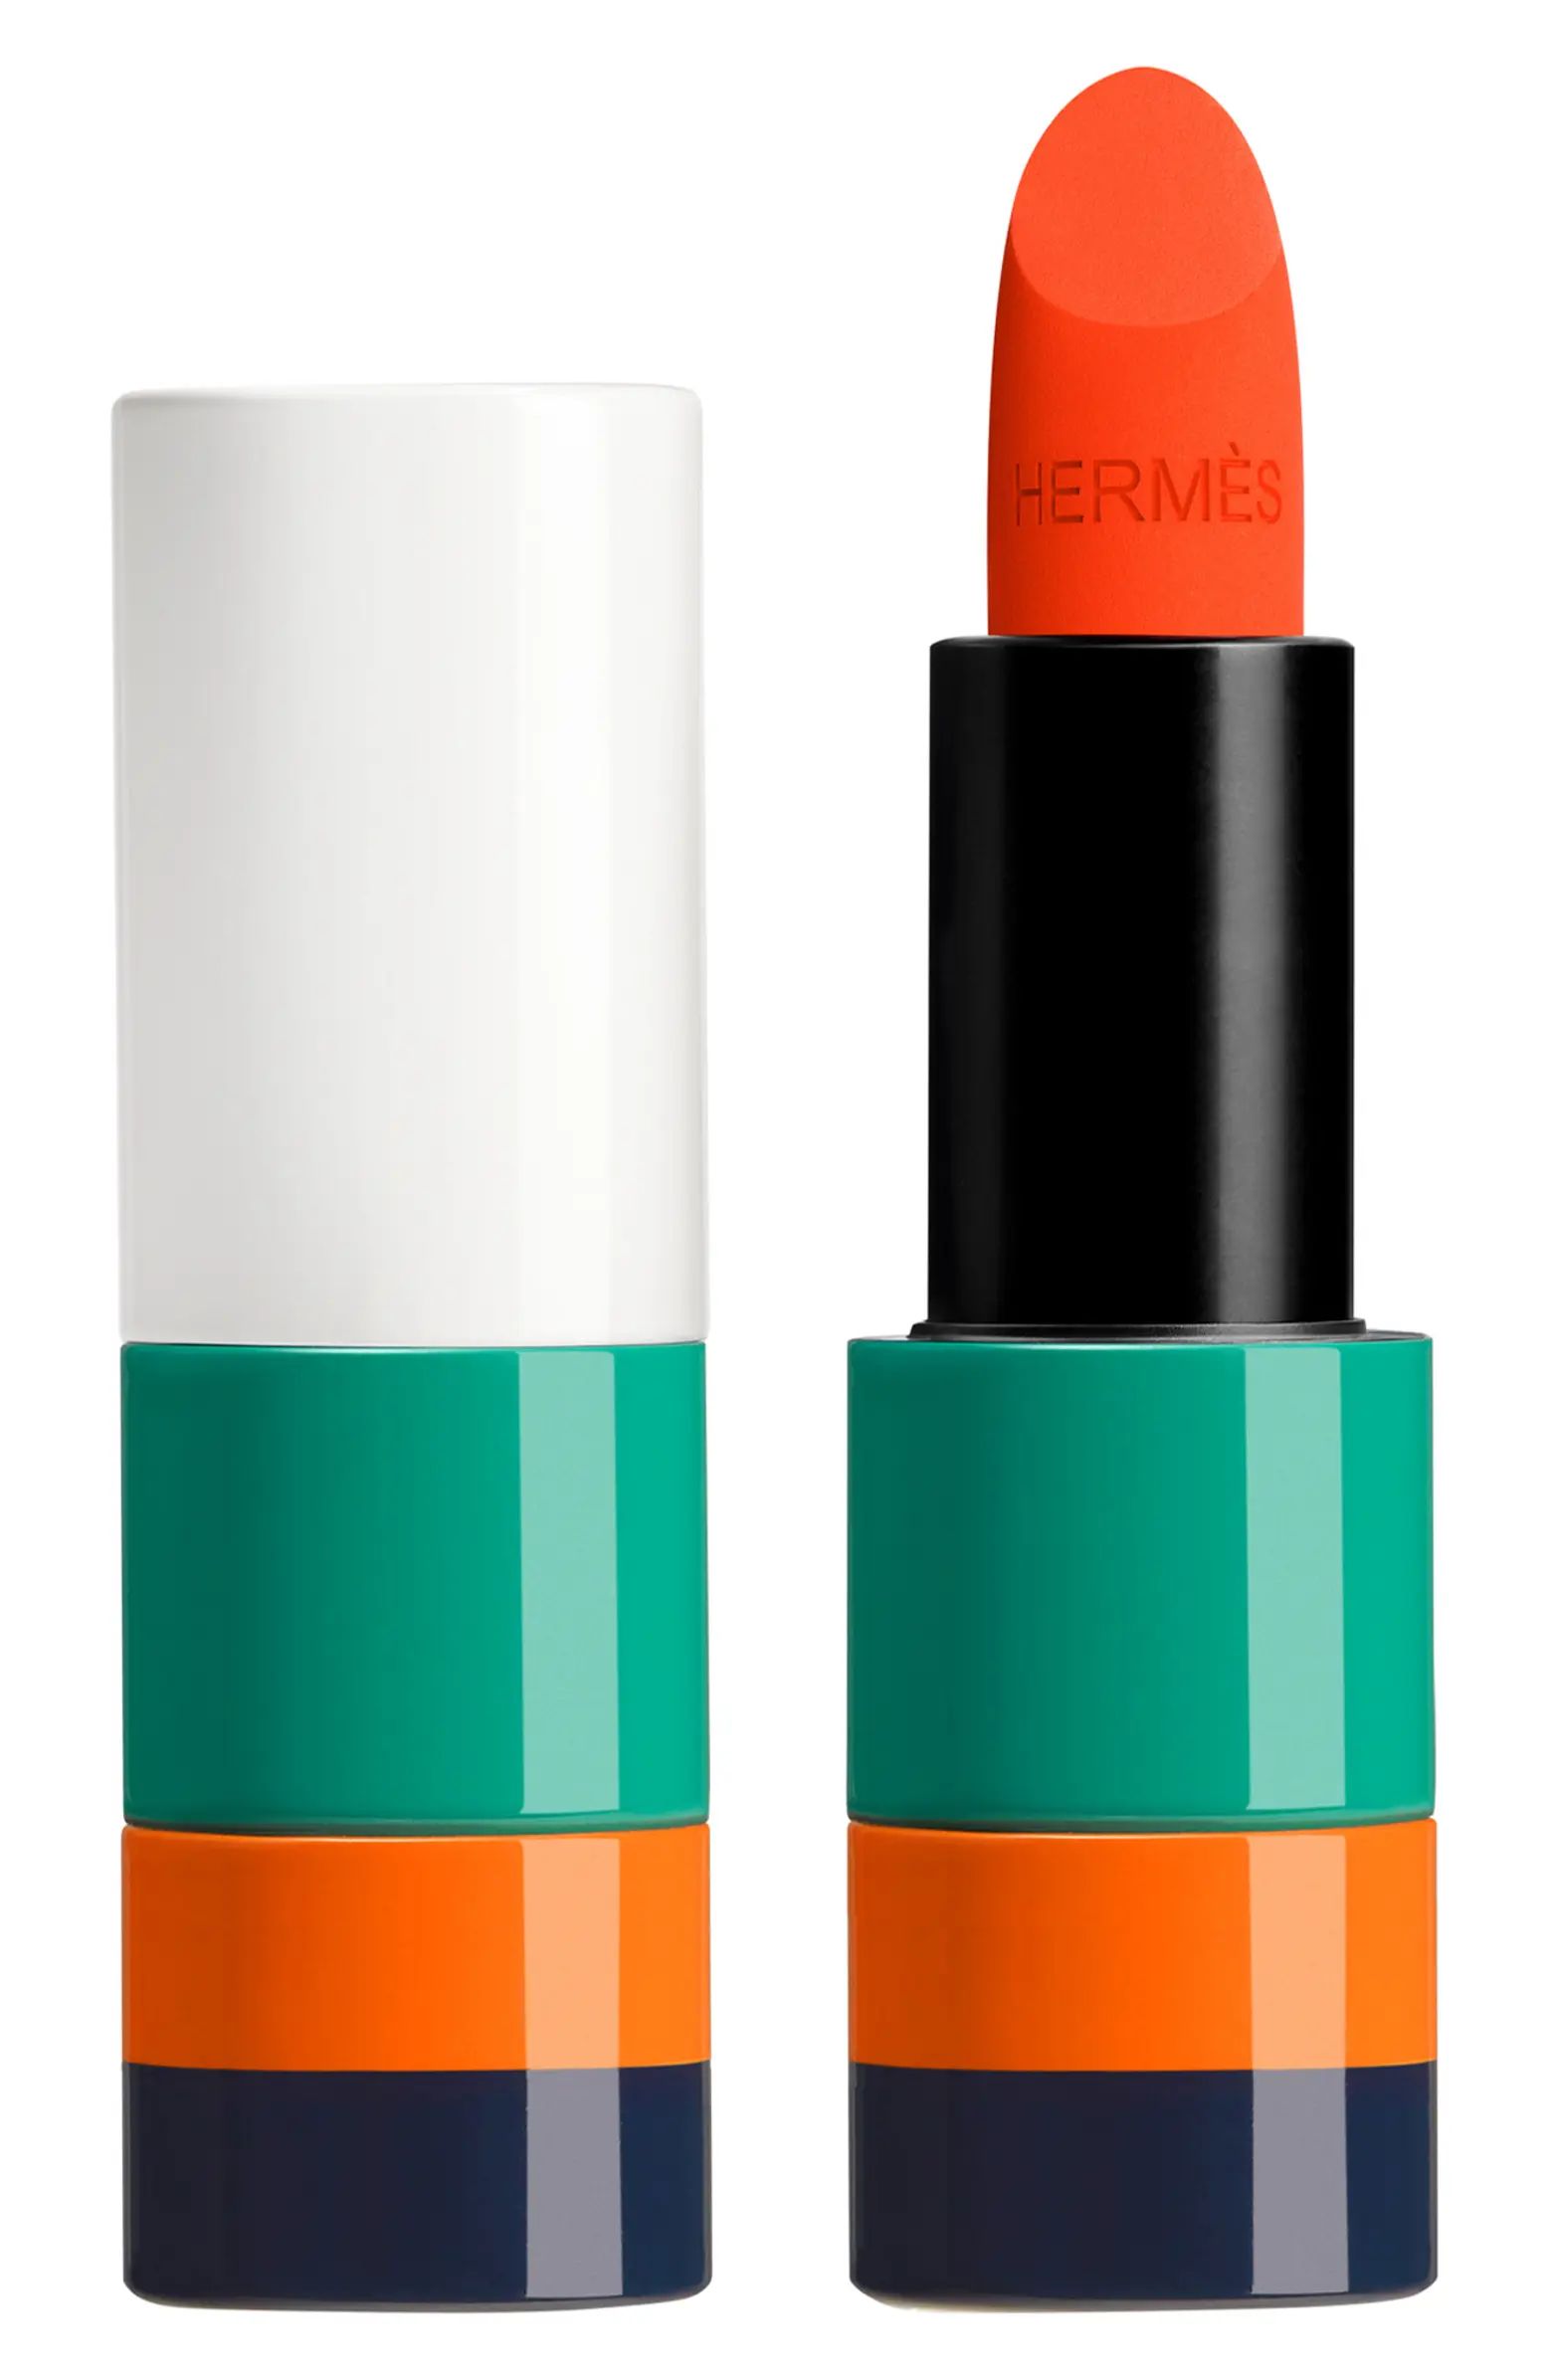 Rouge Hermès - Matte Lipstick in Orange Neon | Nordstrom